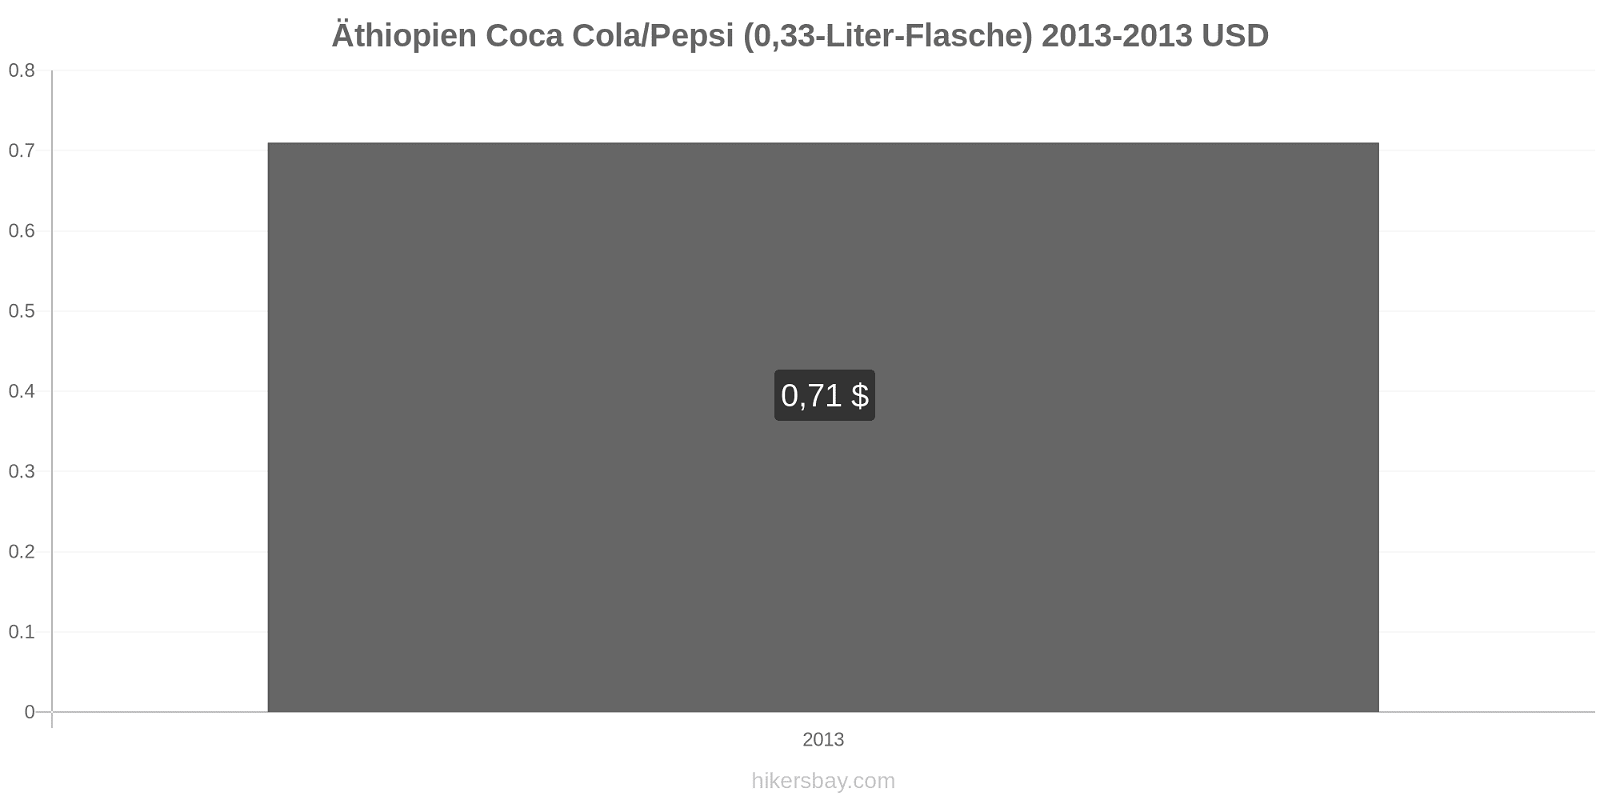 Äthiopien Preisänderungen Coke/Pepsi (0.33-Liter-Flasche) hikersbay.com